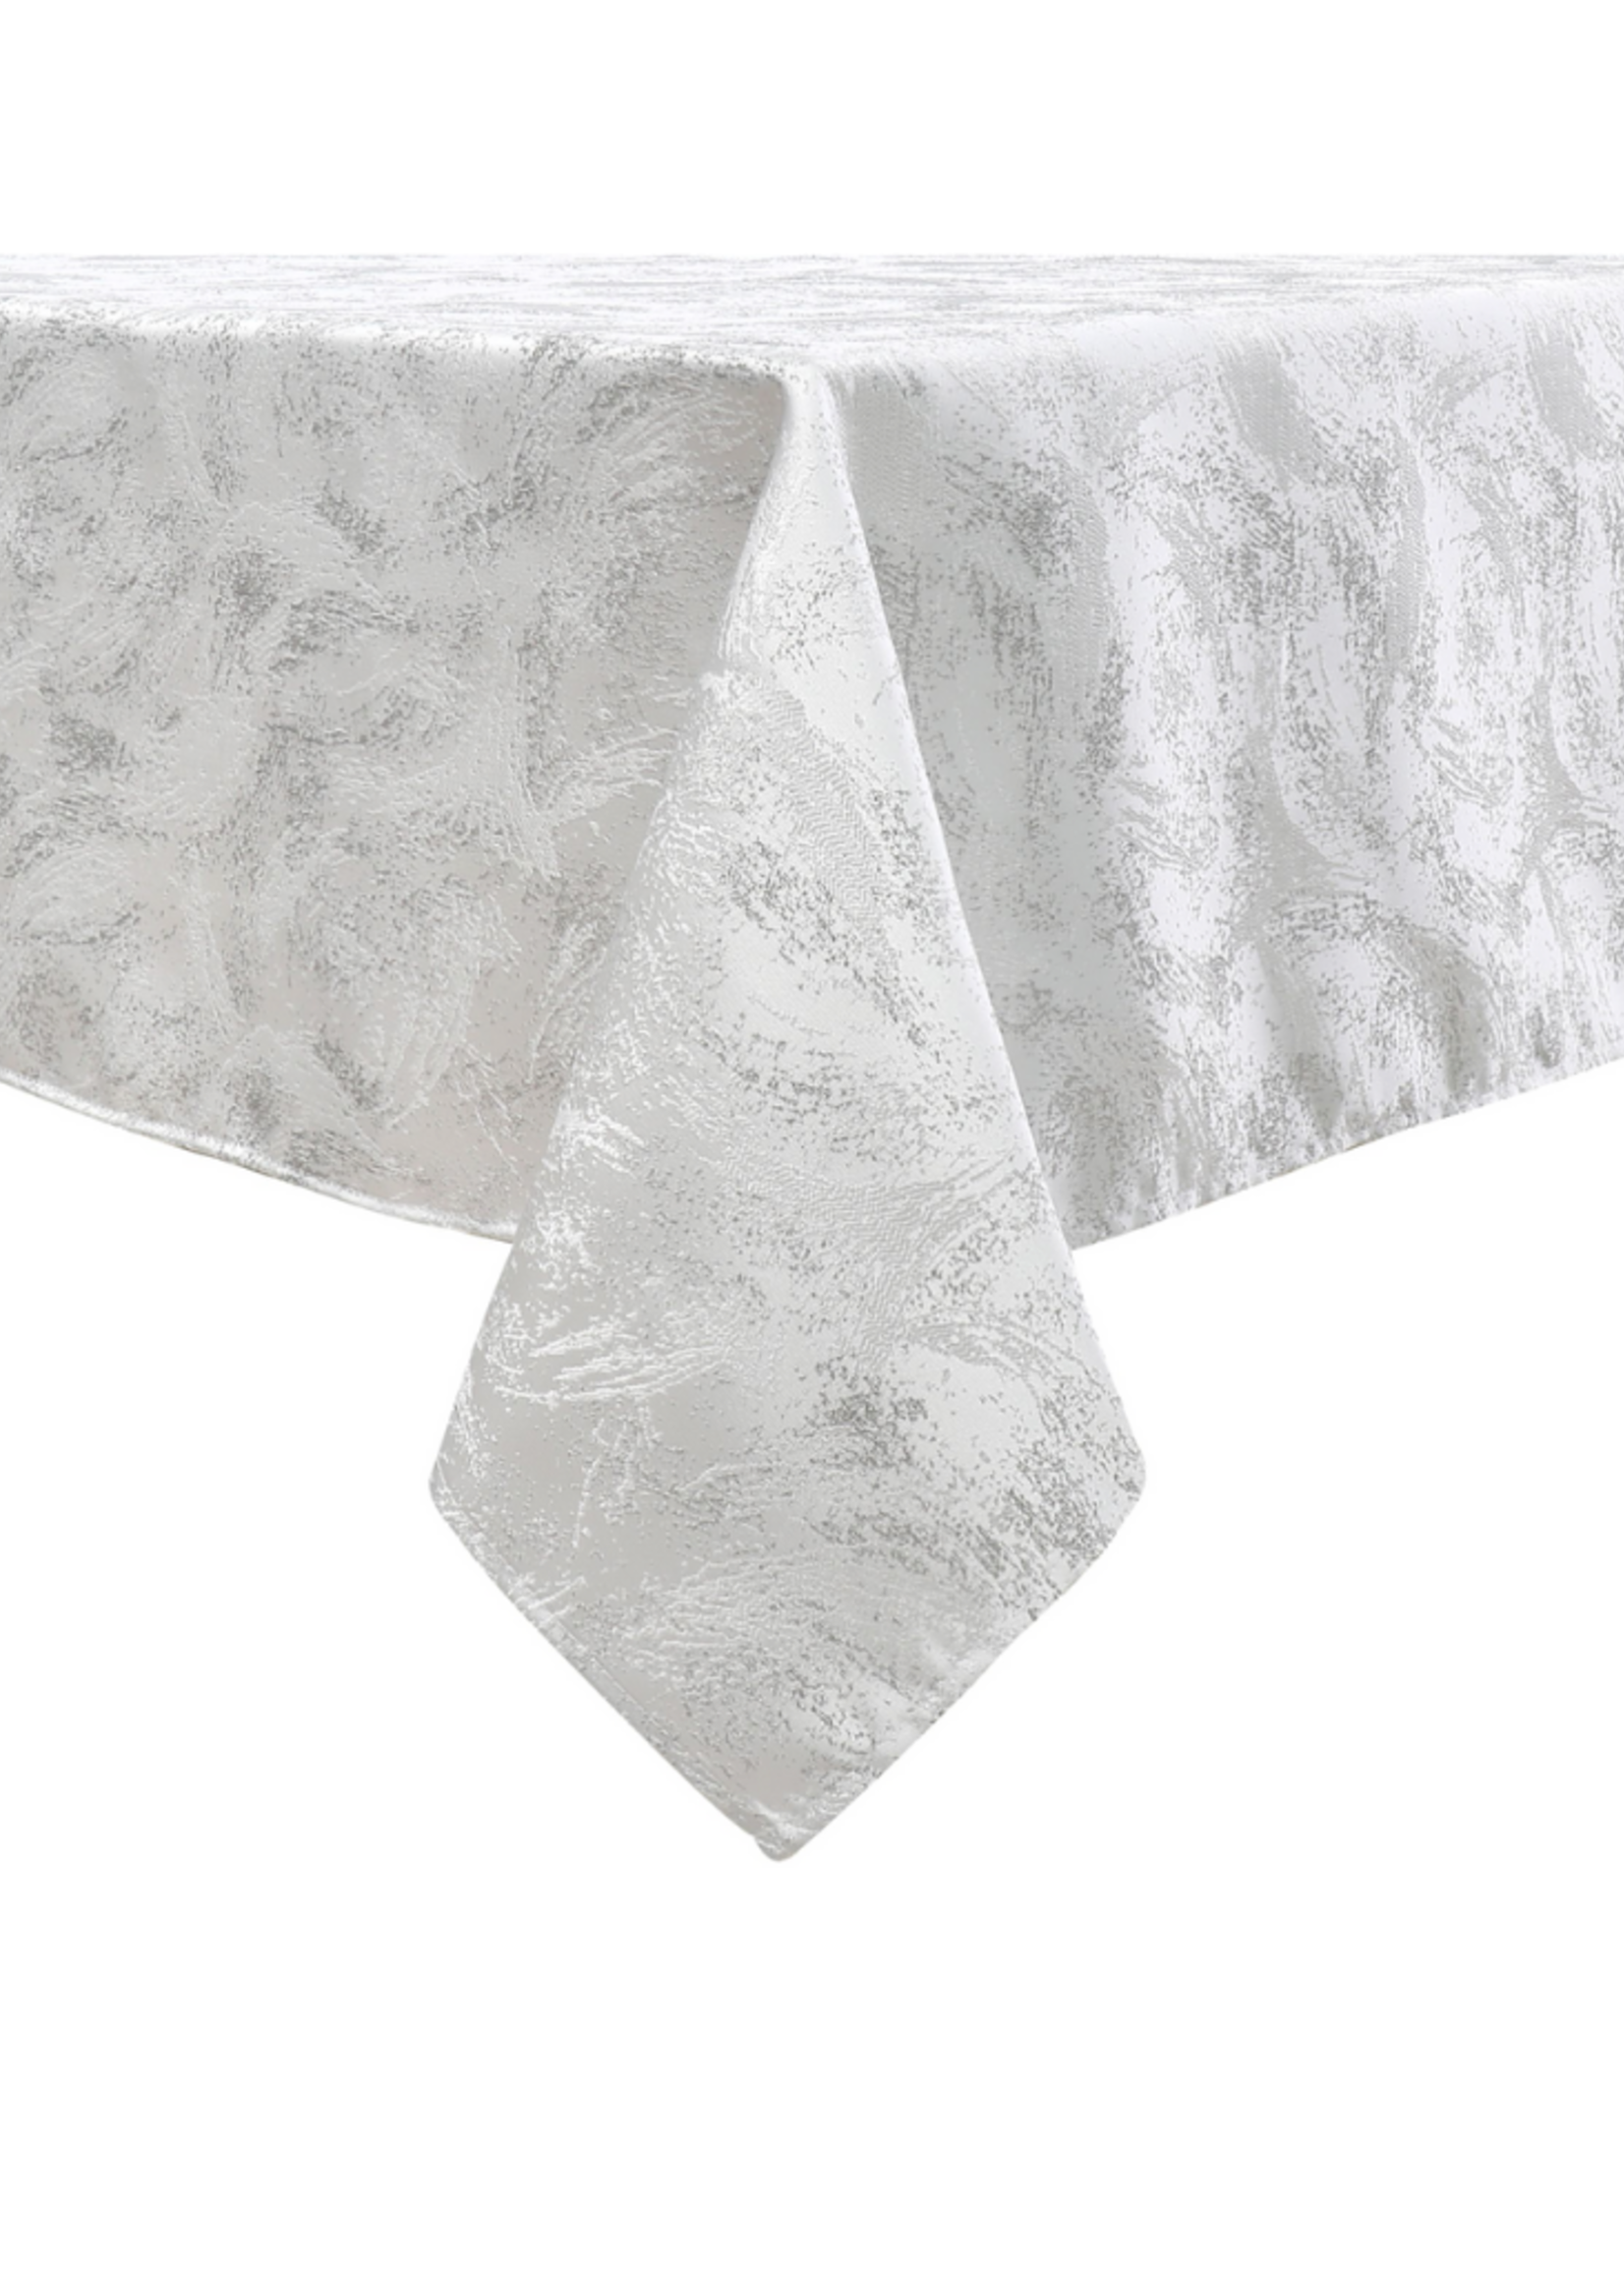 Jacquard Tablecloth // White #1330-70108